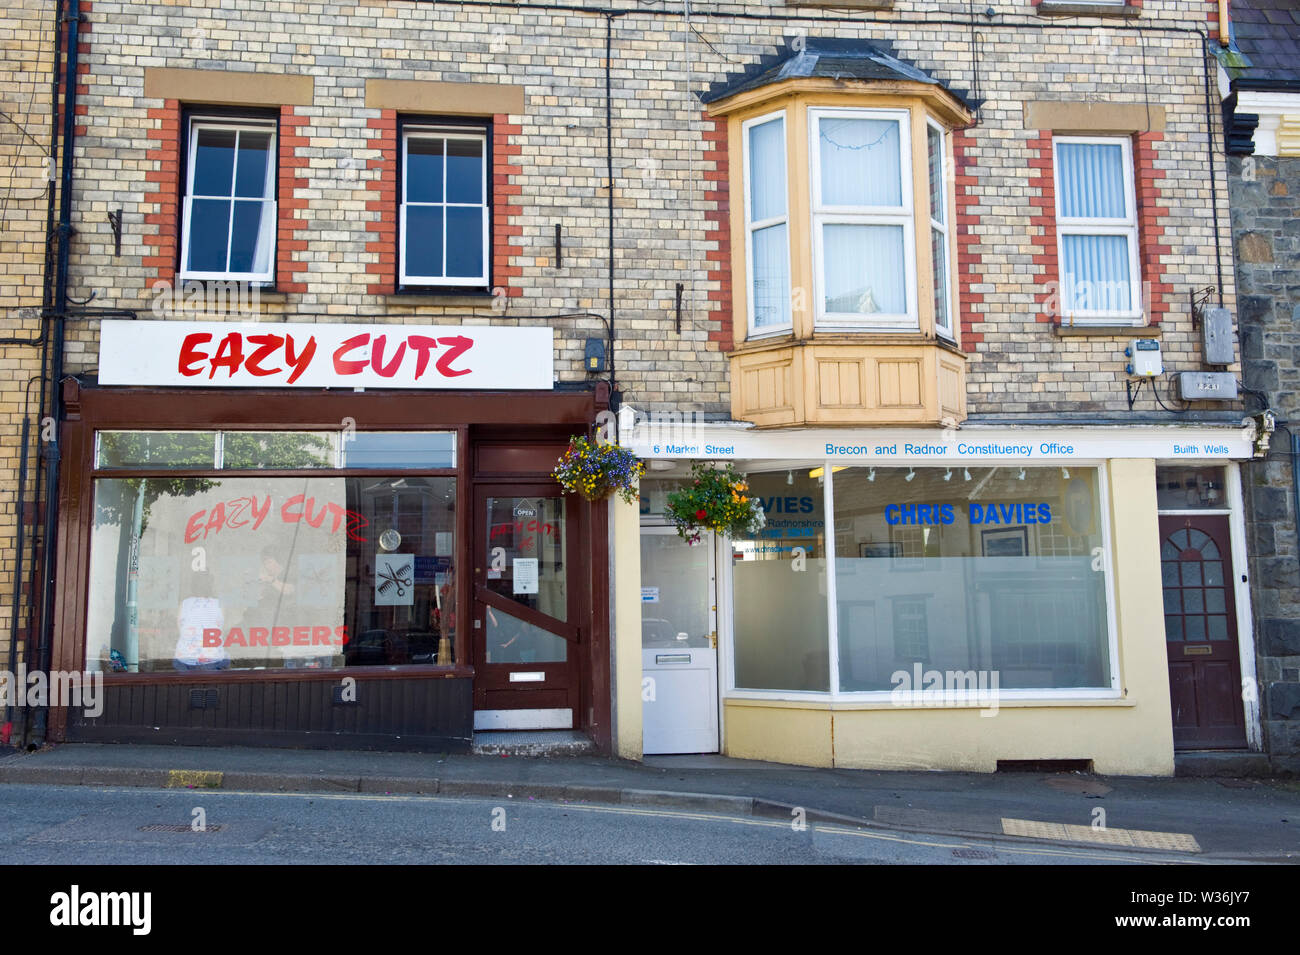 Ufficio del collegio elettorale di Brecon e Radnor, deputato conservatore Chris Davies Accanto ai barbers Eazy Cutz nel centro della città Builth Wells Powys Wales Regno Unito Foto Stock